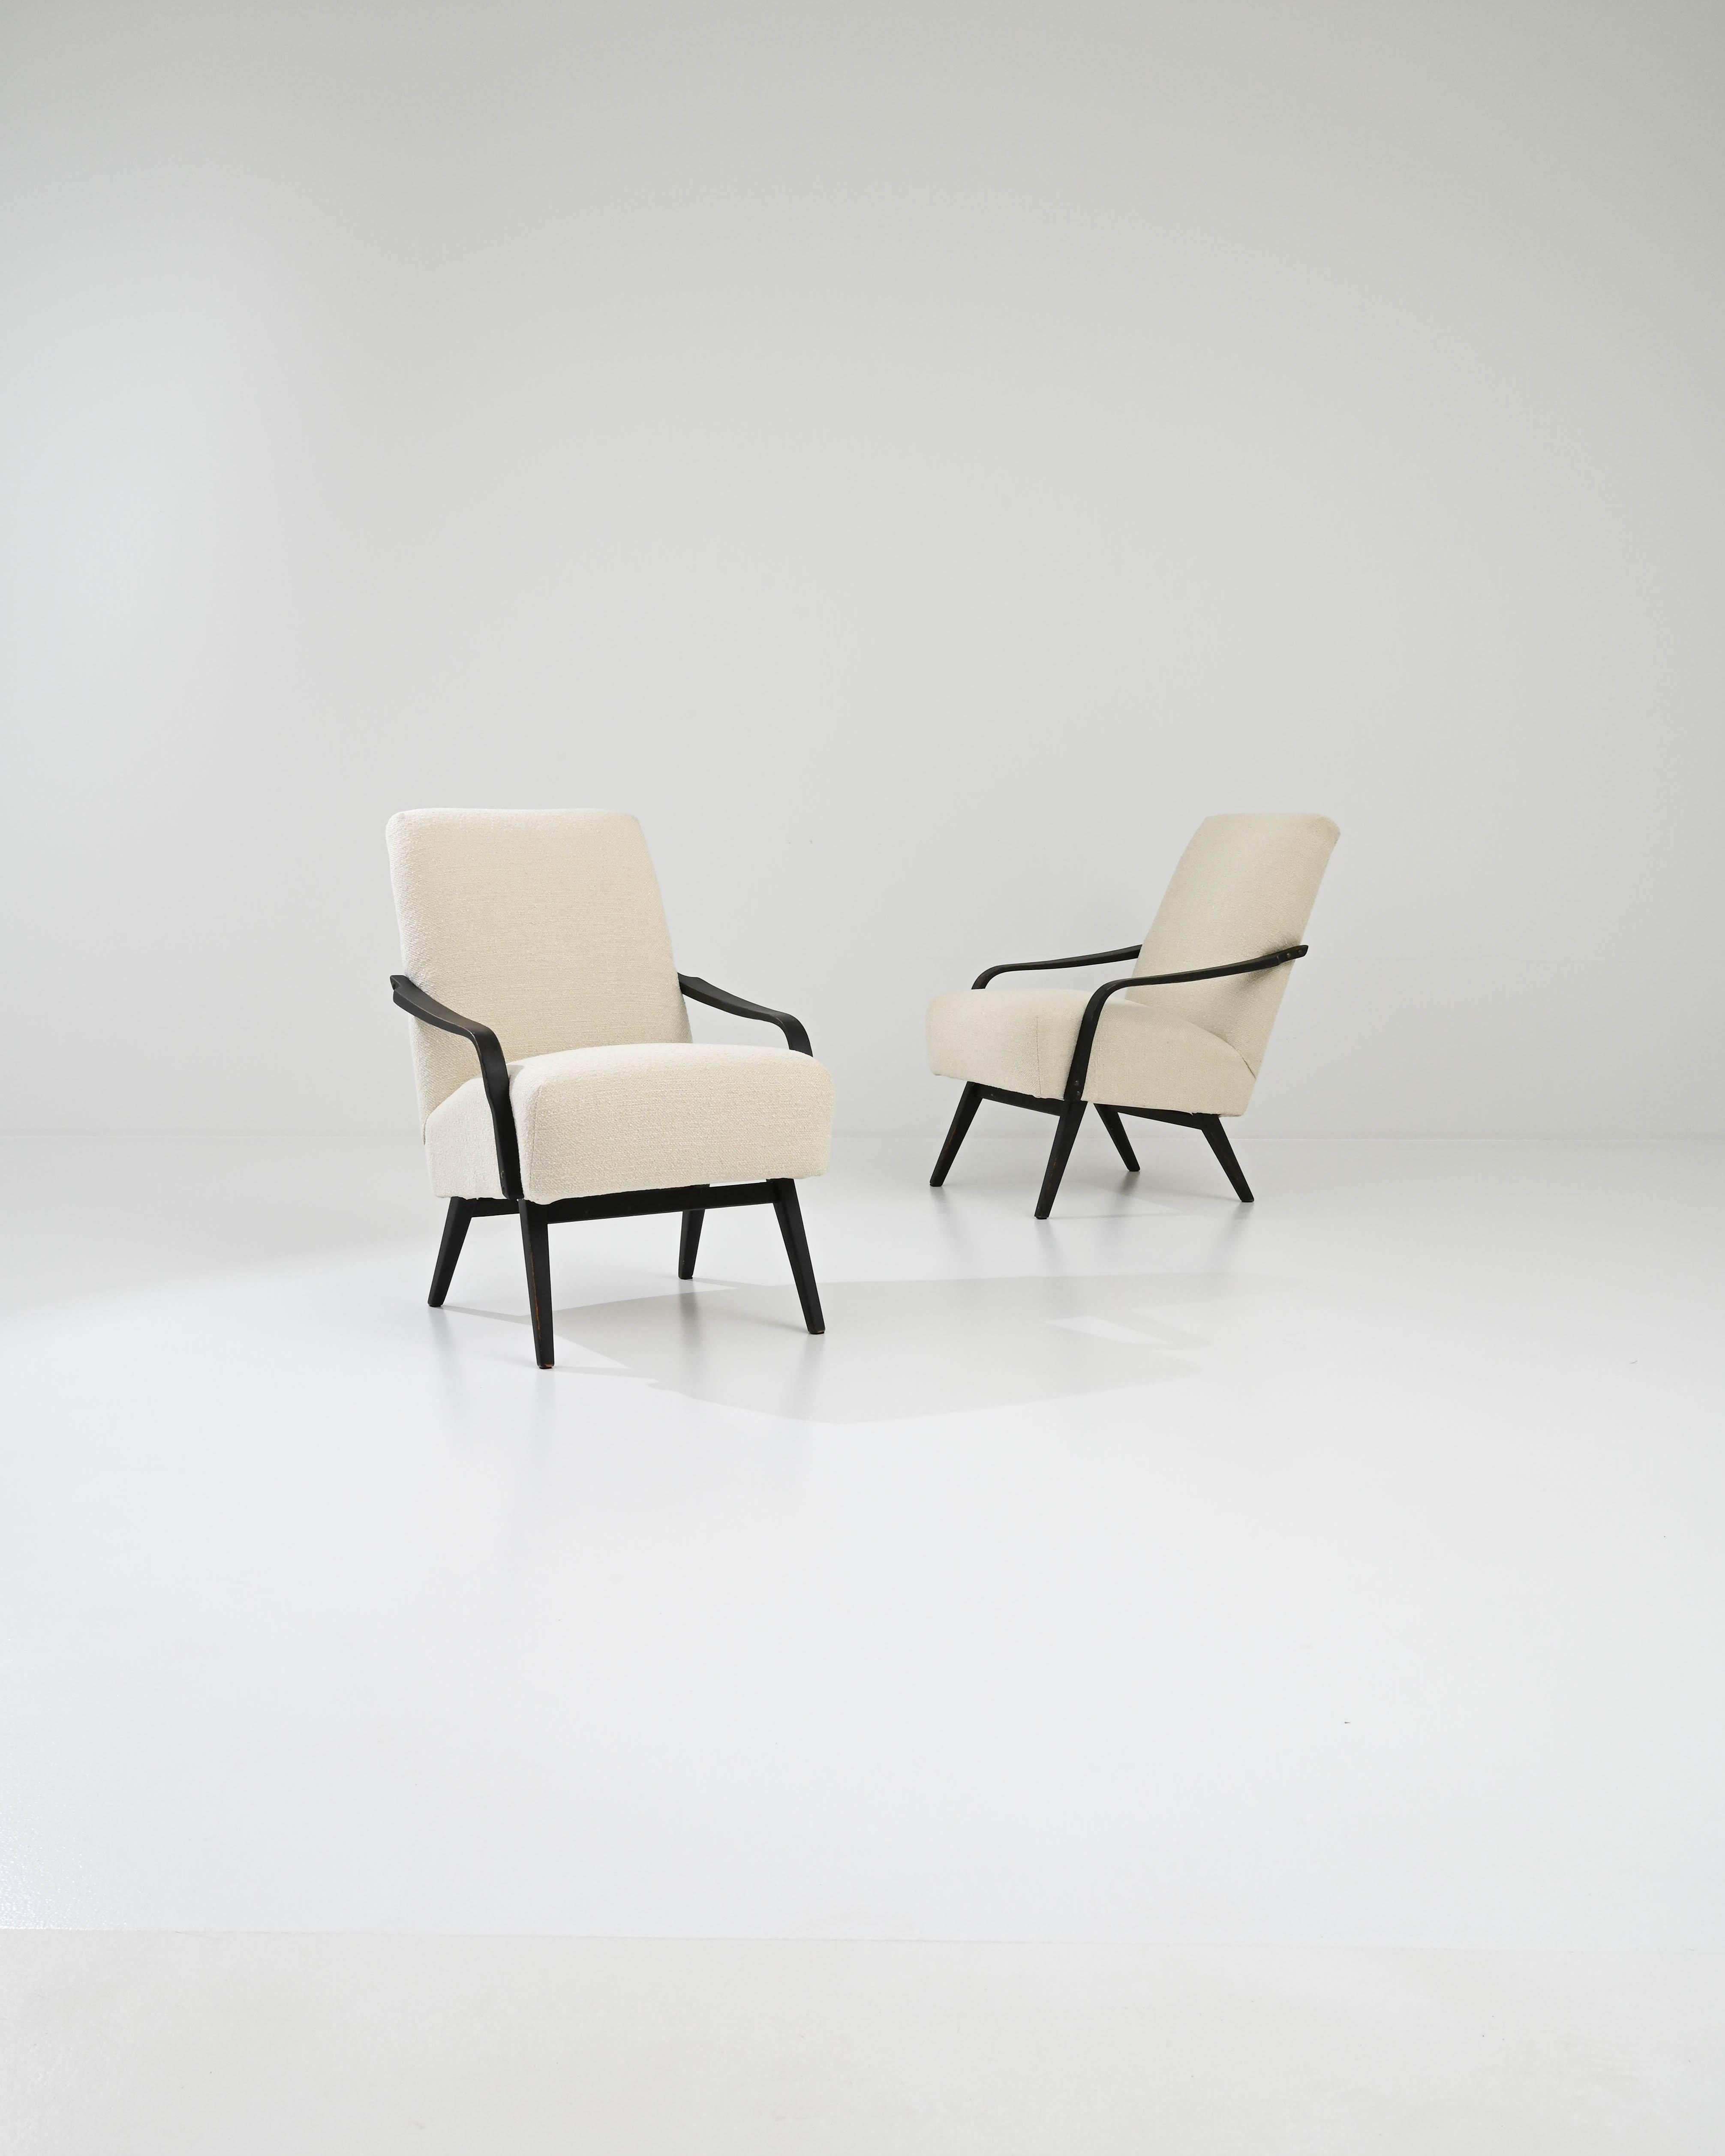 Cette magnifique paire de fauteuils modernes du milieu du siècle a été fabriquée en Tchécoslovaquie par le célèbre fabricant de meubles TON, le design étant attribué à J. Smidek. Bas et confortable, le siège profond tapissé de bouclettes douces est